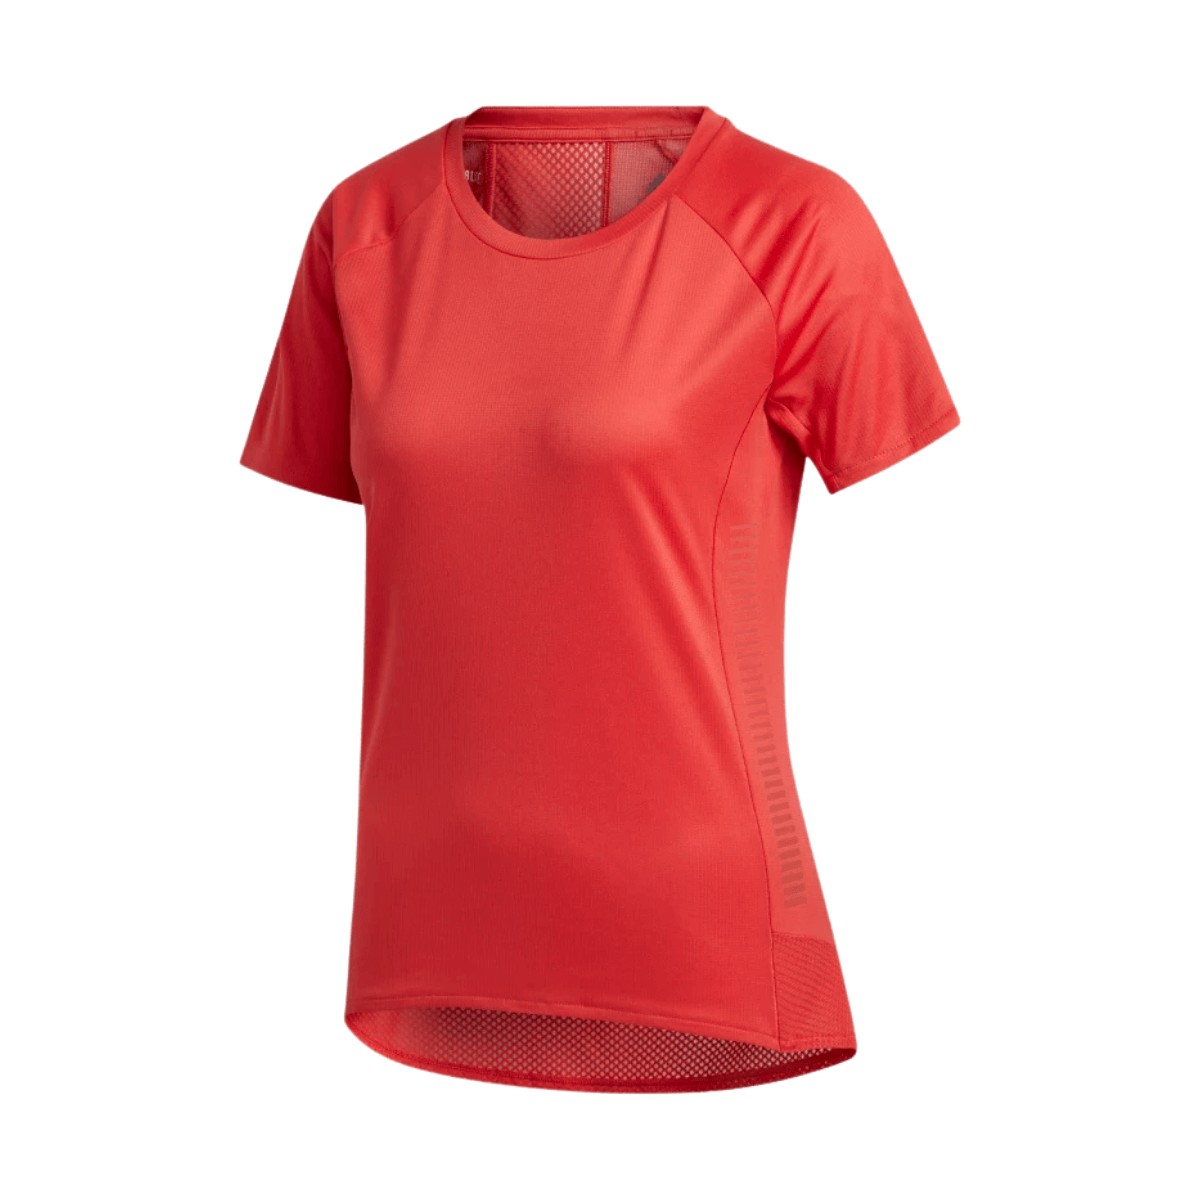 Camiseta Adidas Running Mulher Rosa, Tamanho S